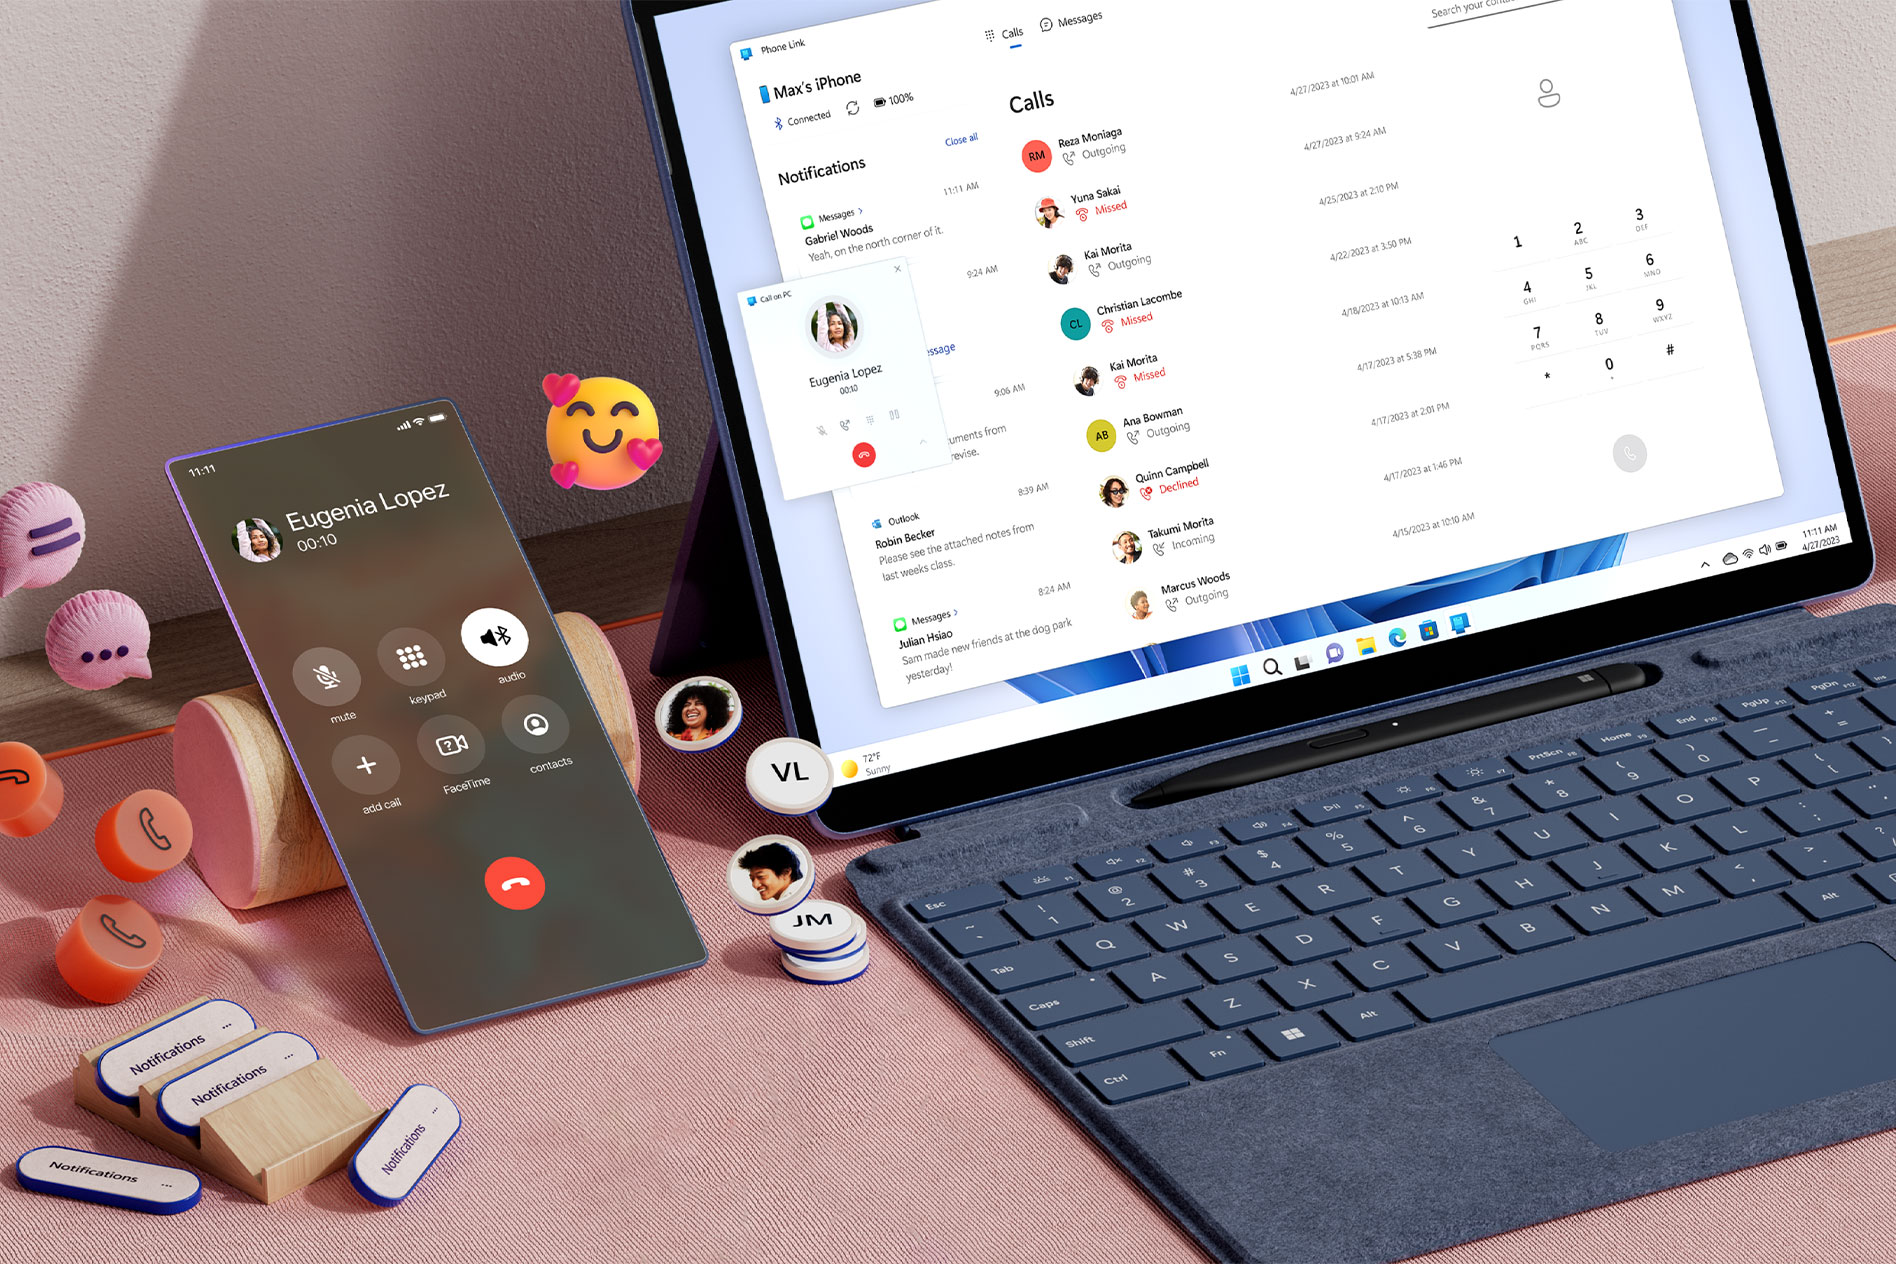 Surface Pro 9 على مكتب تظهر عليه إشعارات المكالمات الهاتفية على الشاشة بينما يستقر الهاتف المحمول بجوار الجهاز مع أيقونات الهاتف والمحادثة والرموز التعبيرية التي تطفو حول الهاتف.